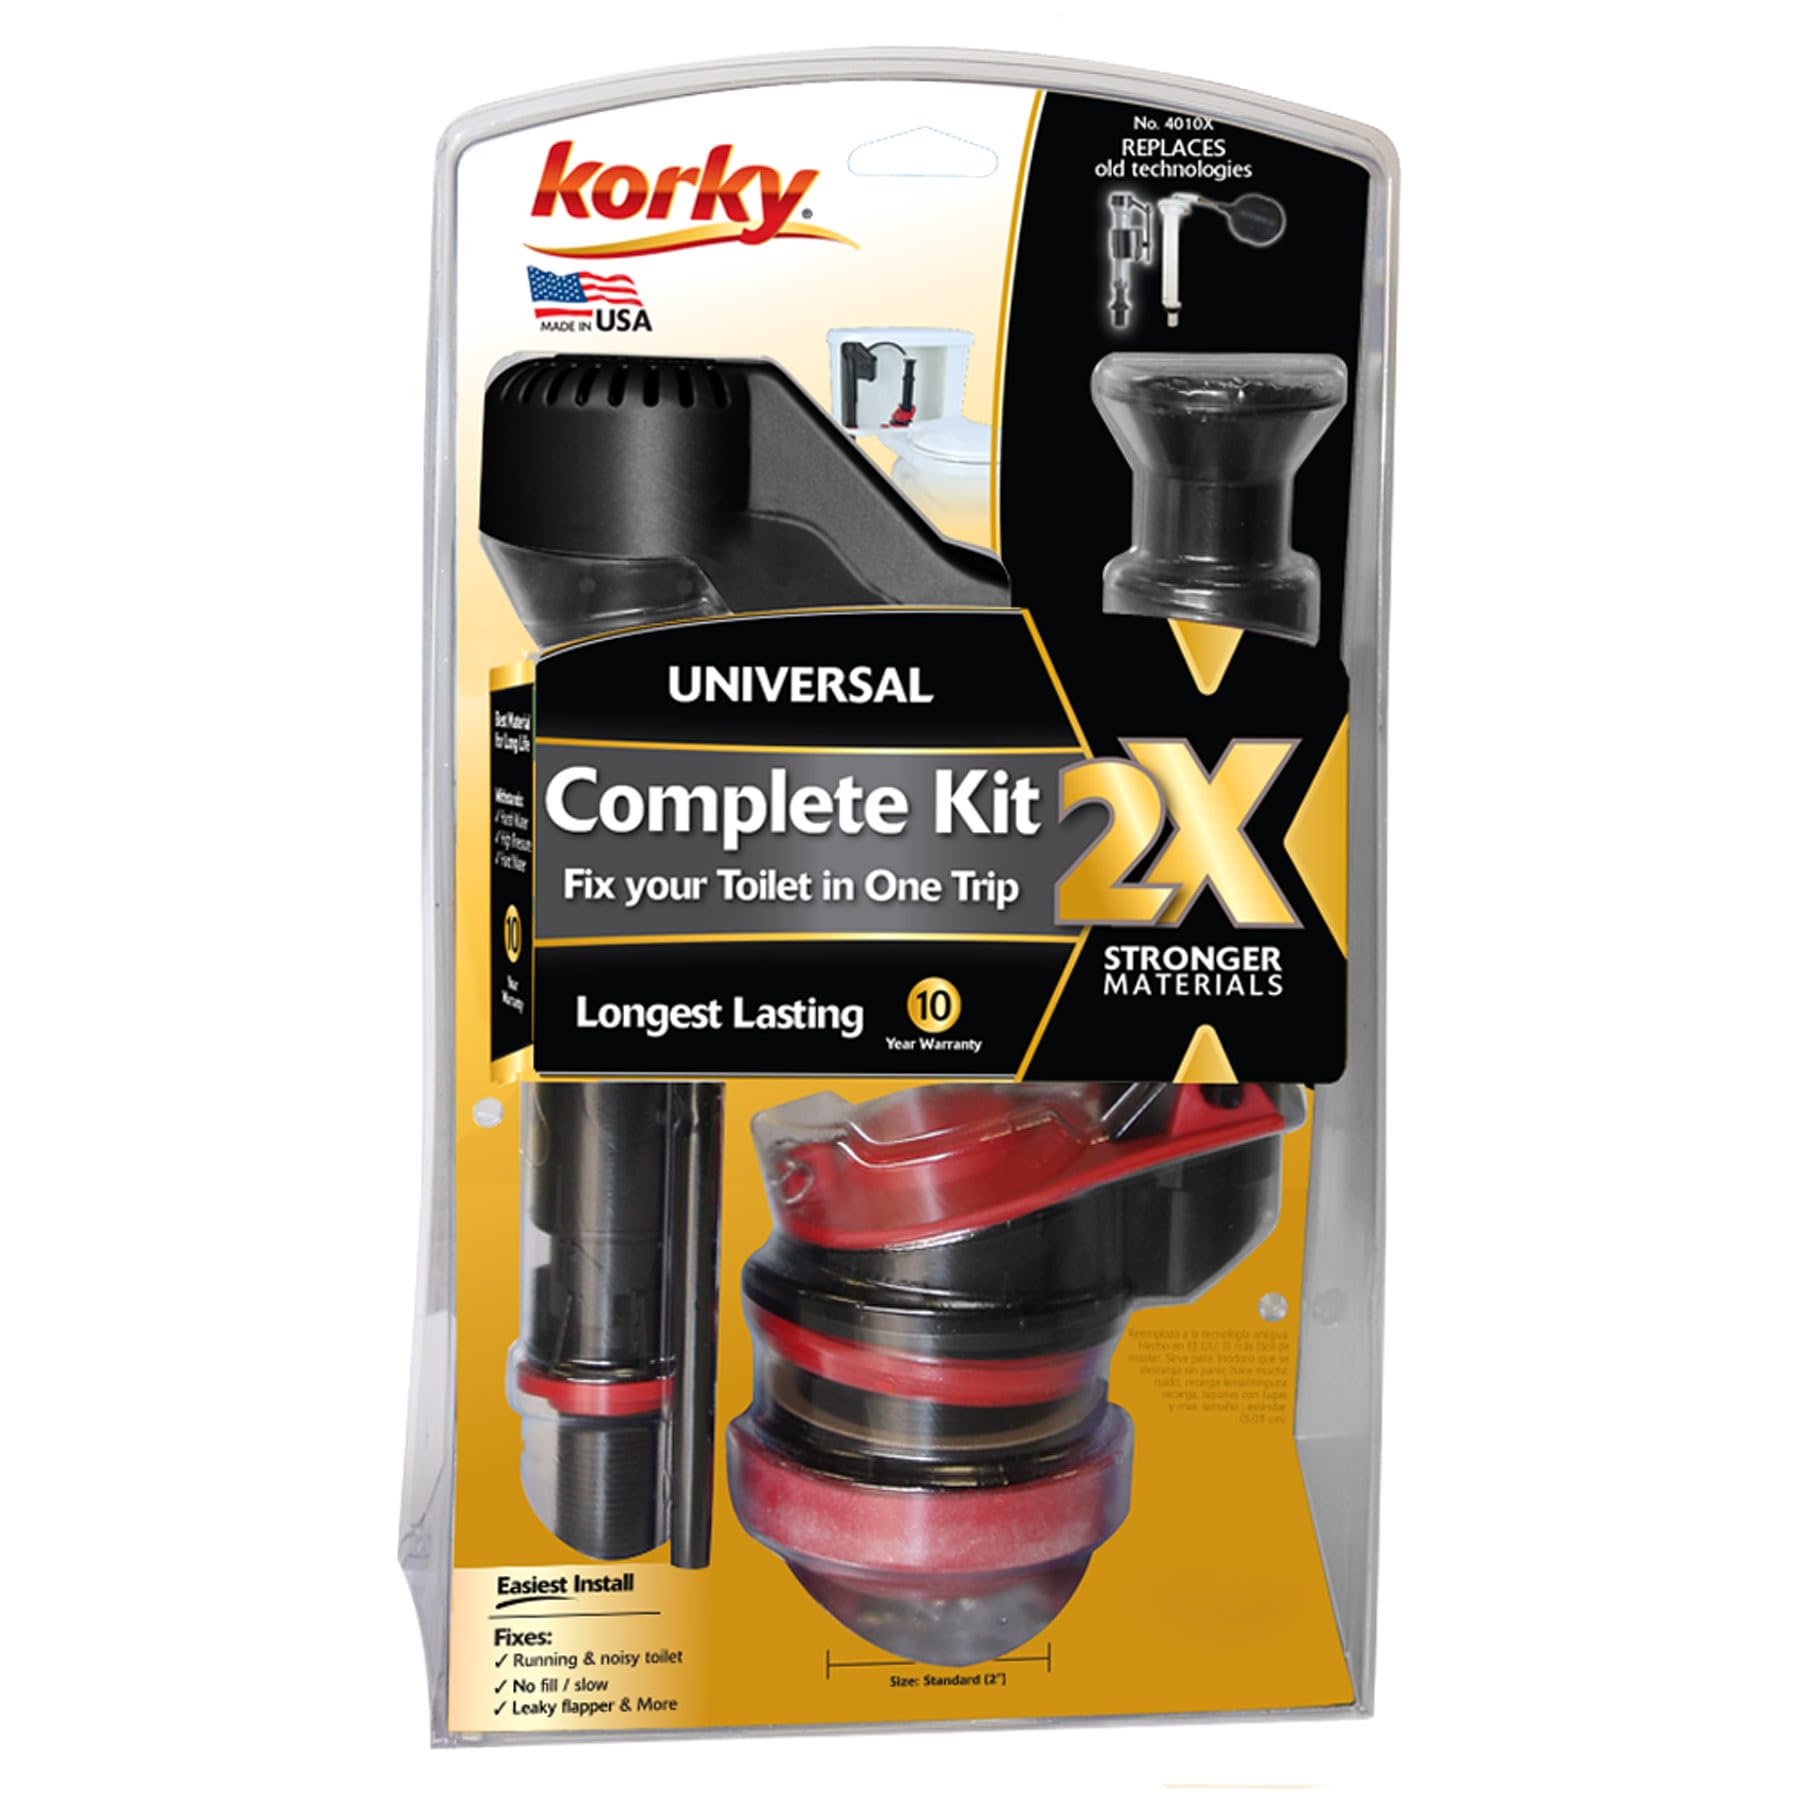 Korky 4010XP Toilet Repair Kit, Black